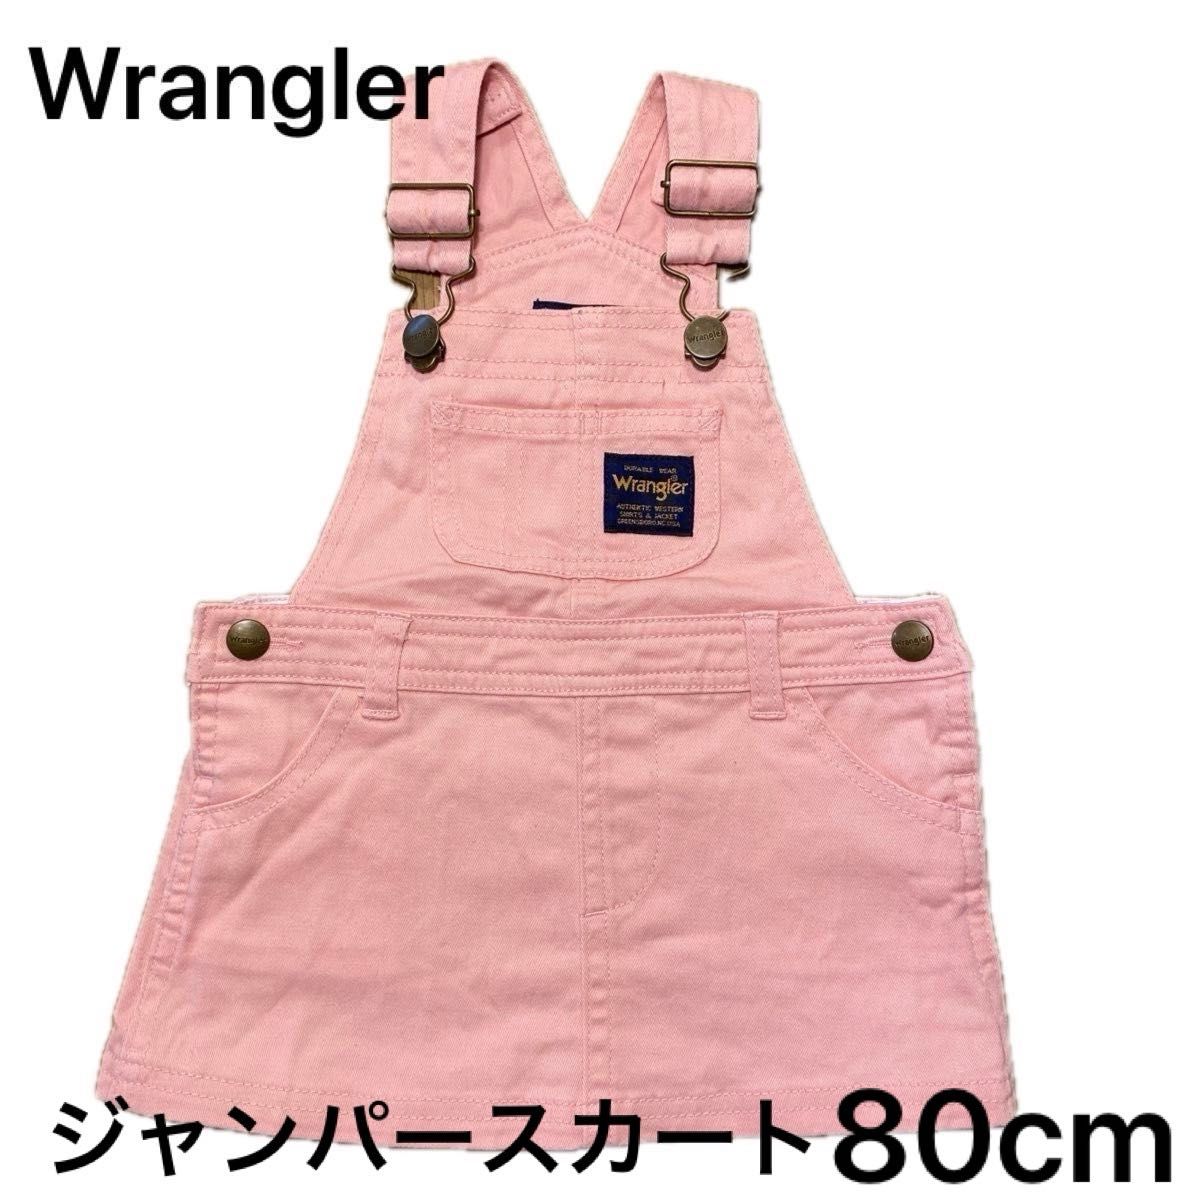 Wrangler ジャンパースカート オーバーオール オーバースカート サロペット 80cm